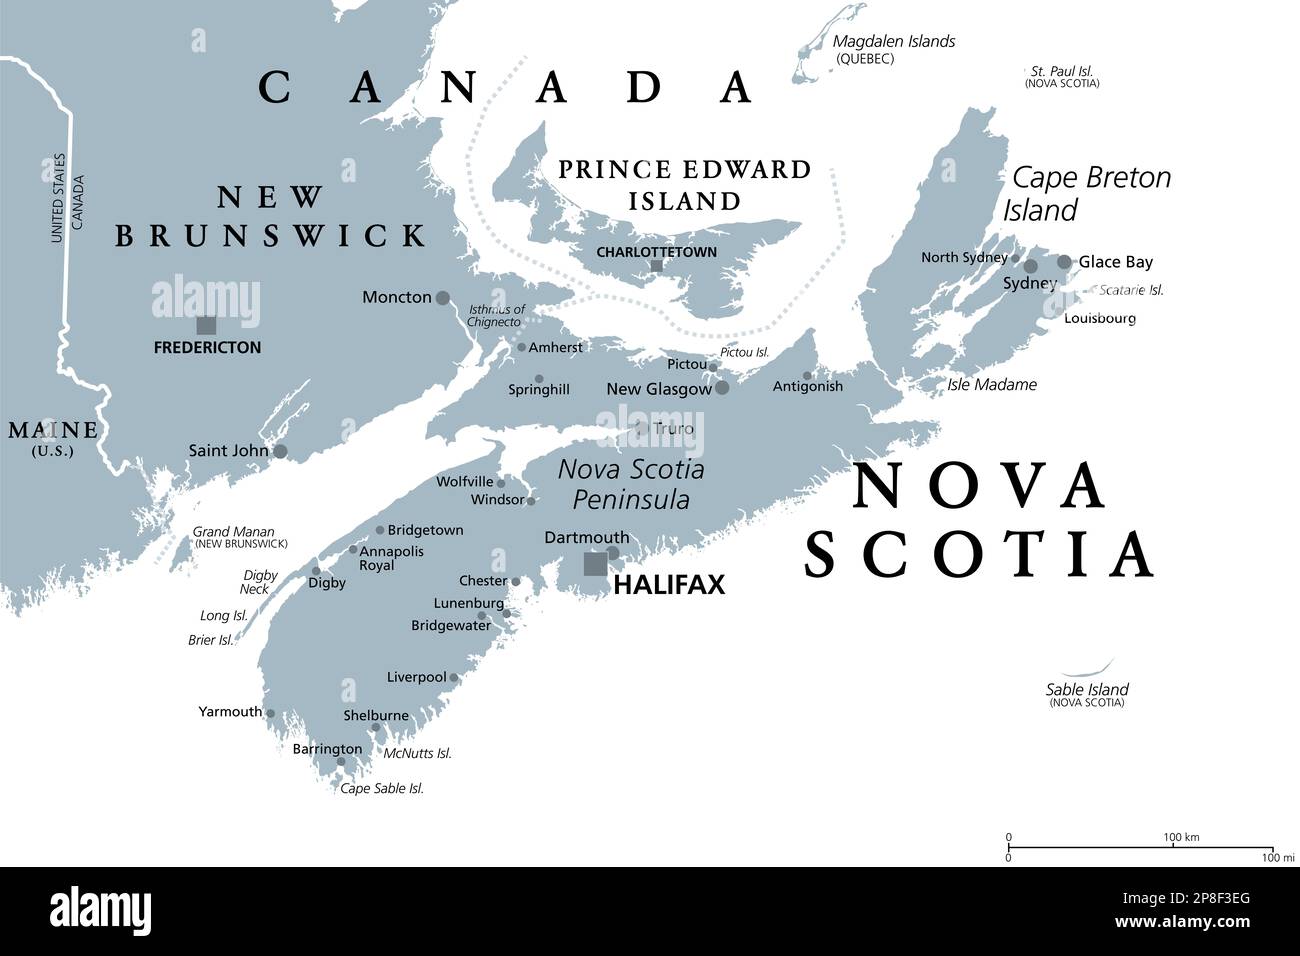 Nova Scotia, provincia marittima e atlantica del Canada, mappa politica grigia. Isola di Capo Breton e penisola della Nuova Scozia, con la capitale Halifax. Foto Stock